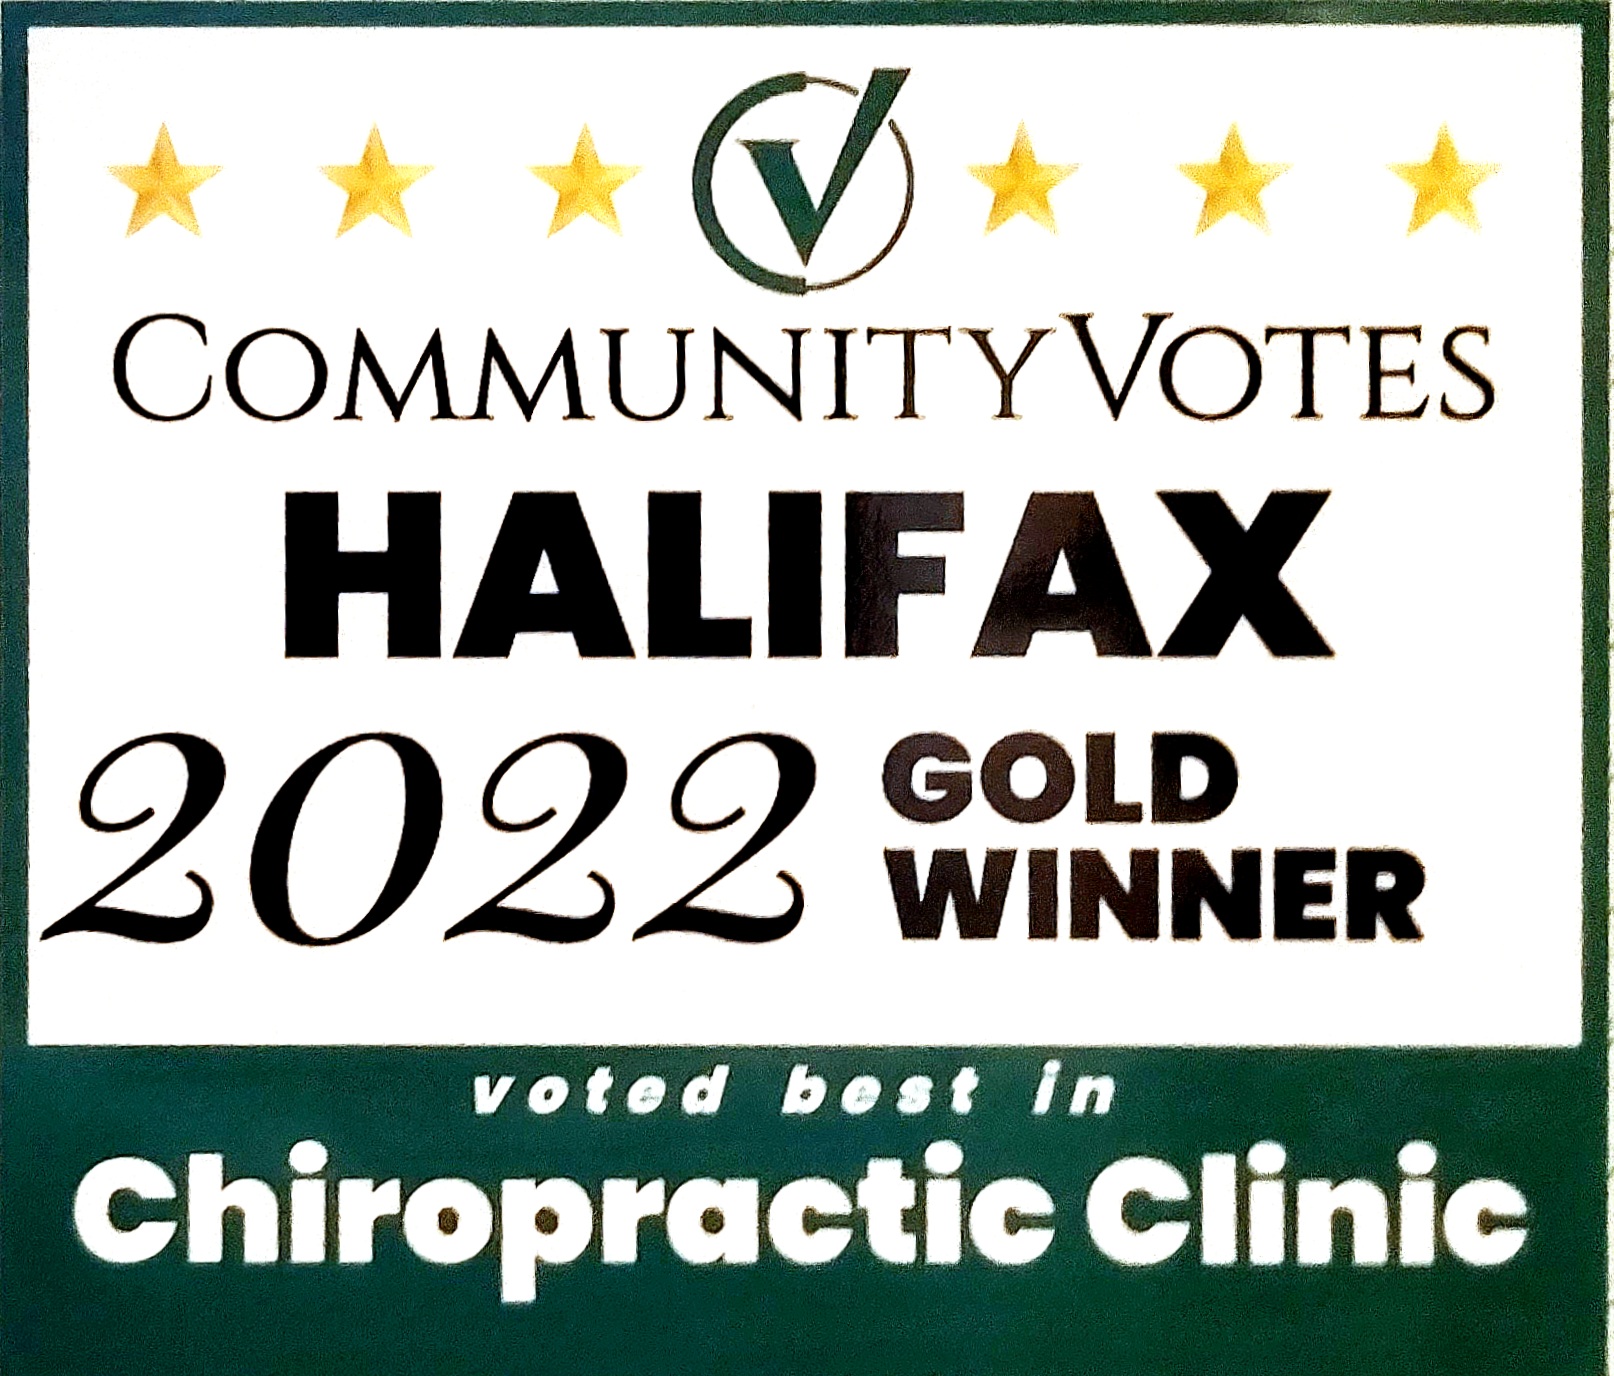 Community votes halifax 2022 gold winner